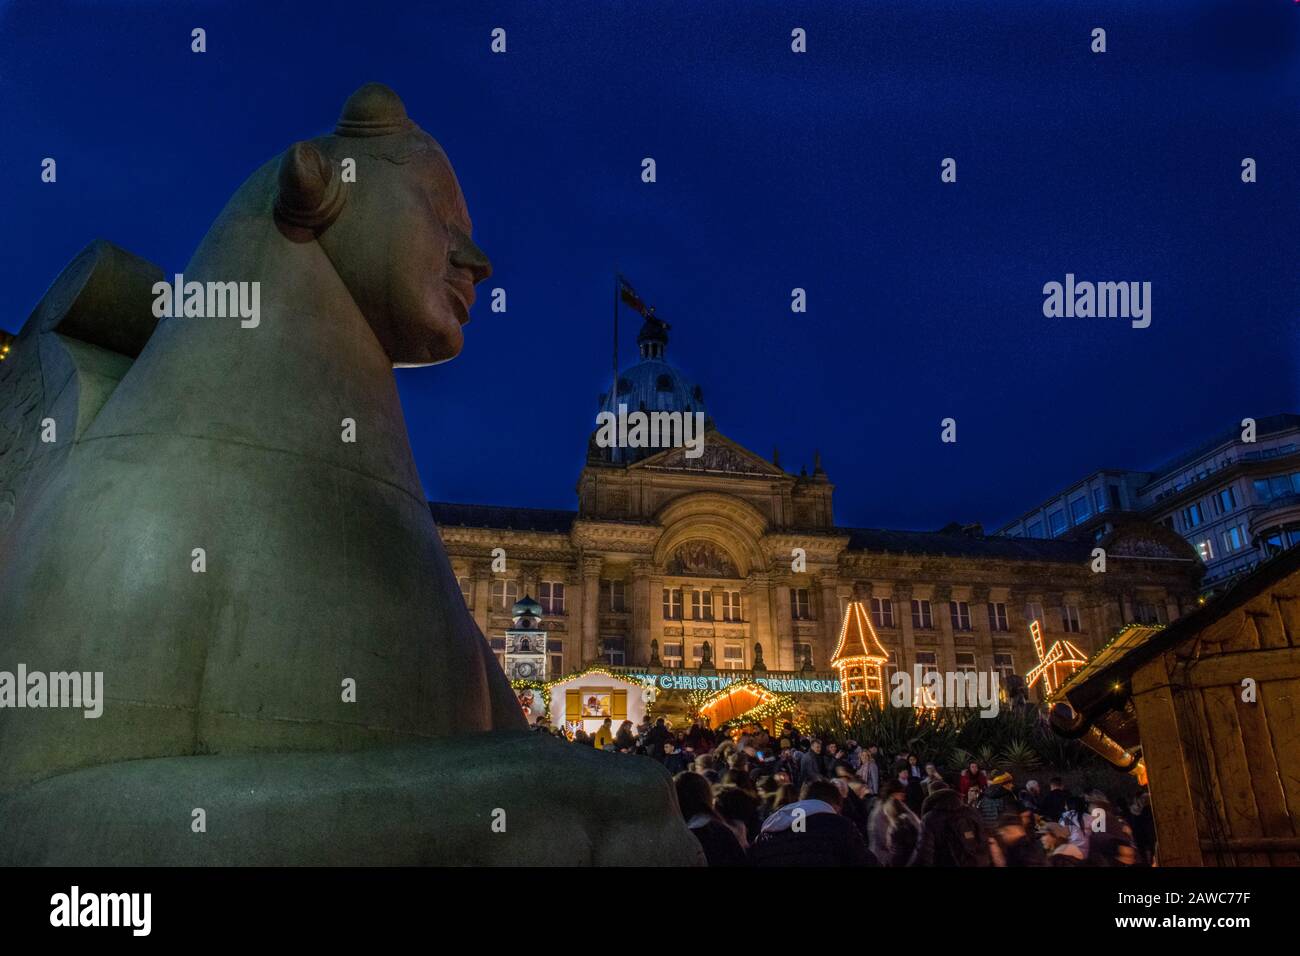 Sphinx-Statue während des weihnachtsfestes in Birmingham, Großbritannien Stockfoto